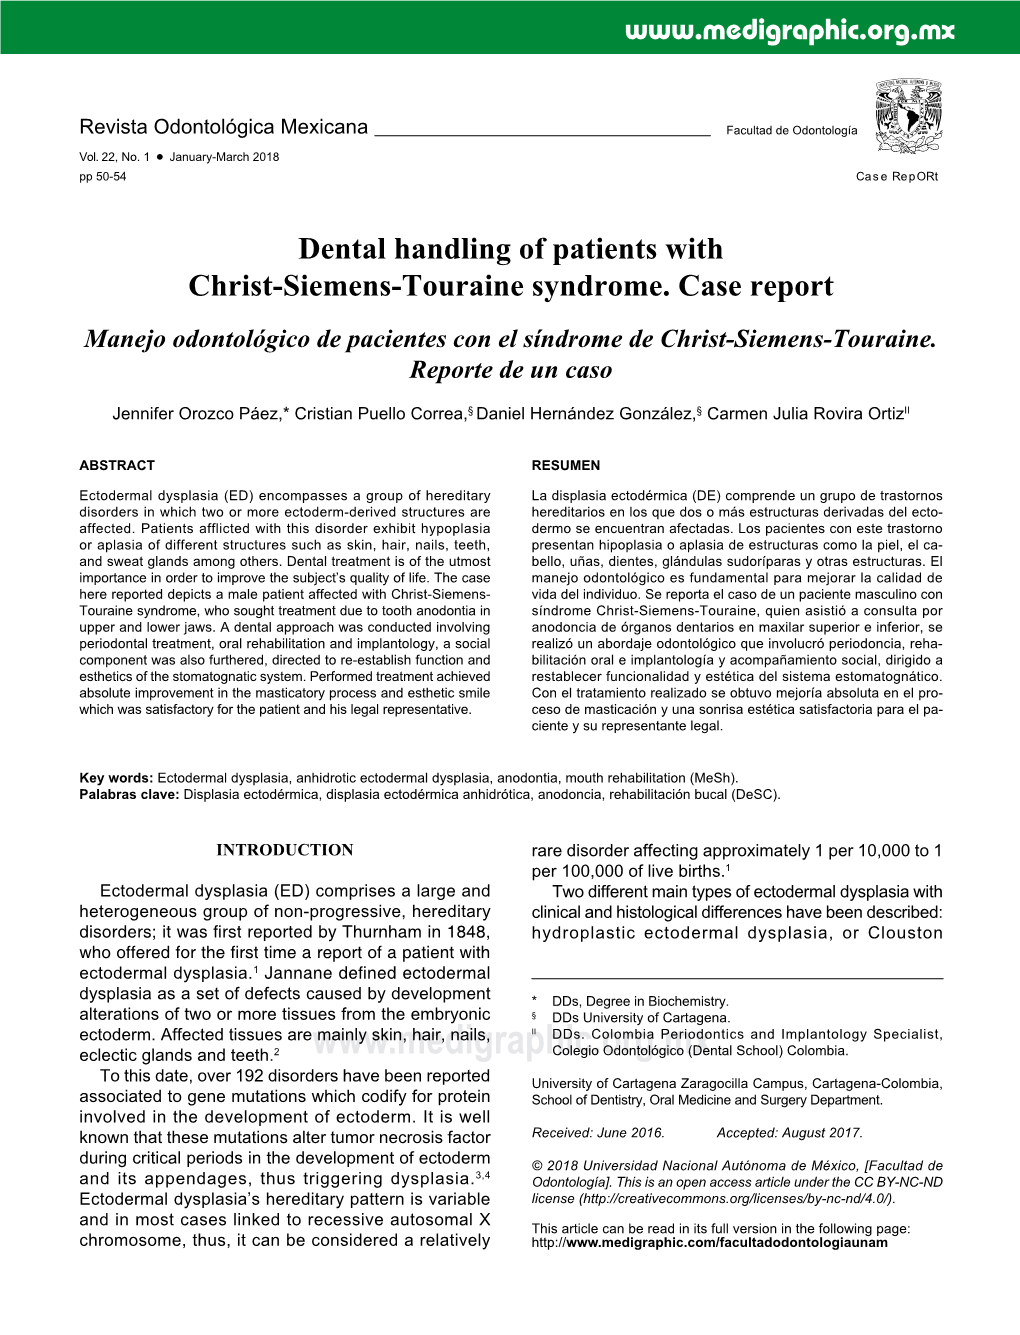 Dental Handling of Patients with Christ-Siemens-Touraine Syndrome. Case Report Manejo Odontológico De Pacientes Con El Síndrome De Christ-Siemens-Touraine